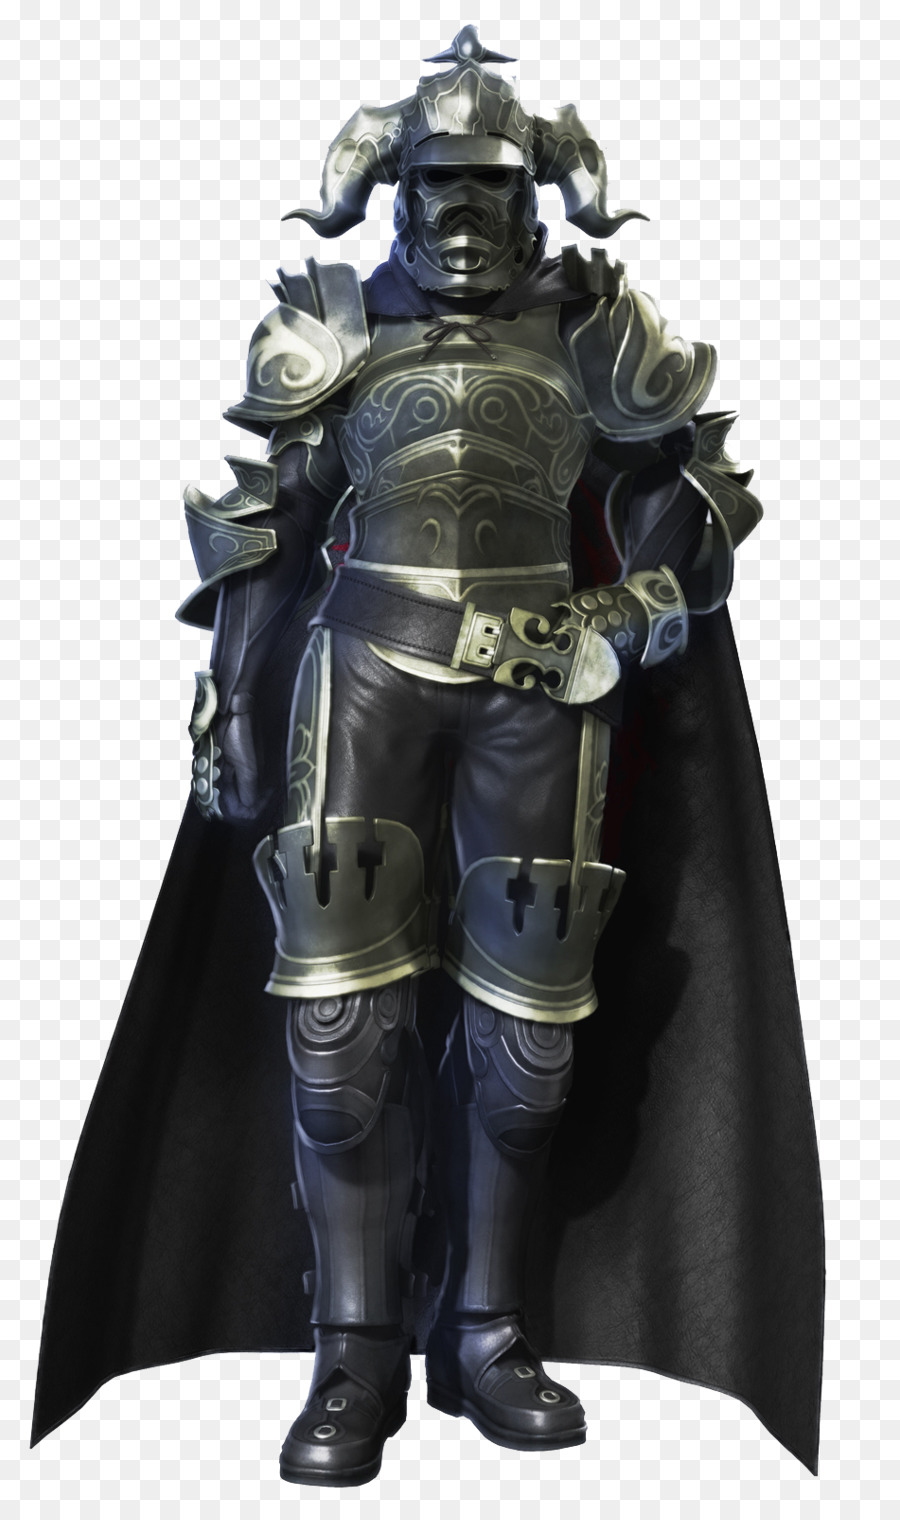 Final Fantasy XII Bản Final Fantasy Tưởng pháo Đài - cosplay giáp kế hoạch chi tiết